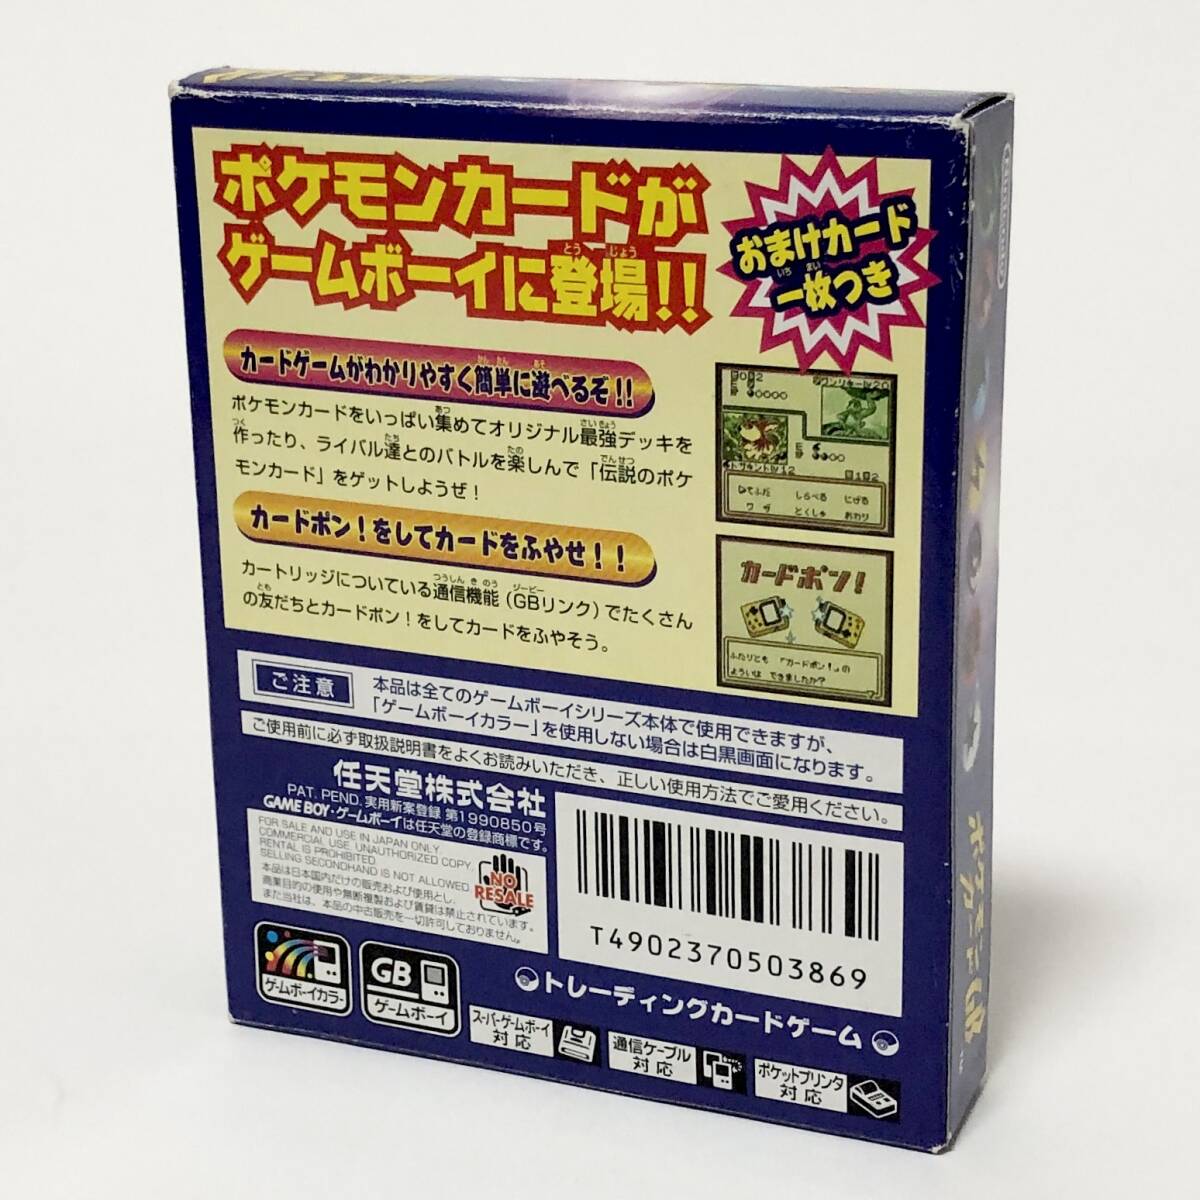 ゲームボーイ 中古品 ポケモンカードGB 箱説付き カード付属 痛みあり ポケモン 任天堂 Nintendo GameBoy Pokemon Card GB CIB Tested_画像3